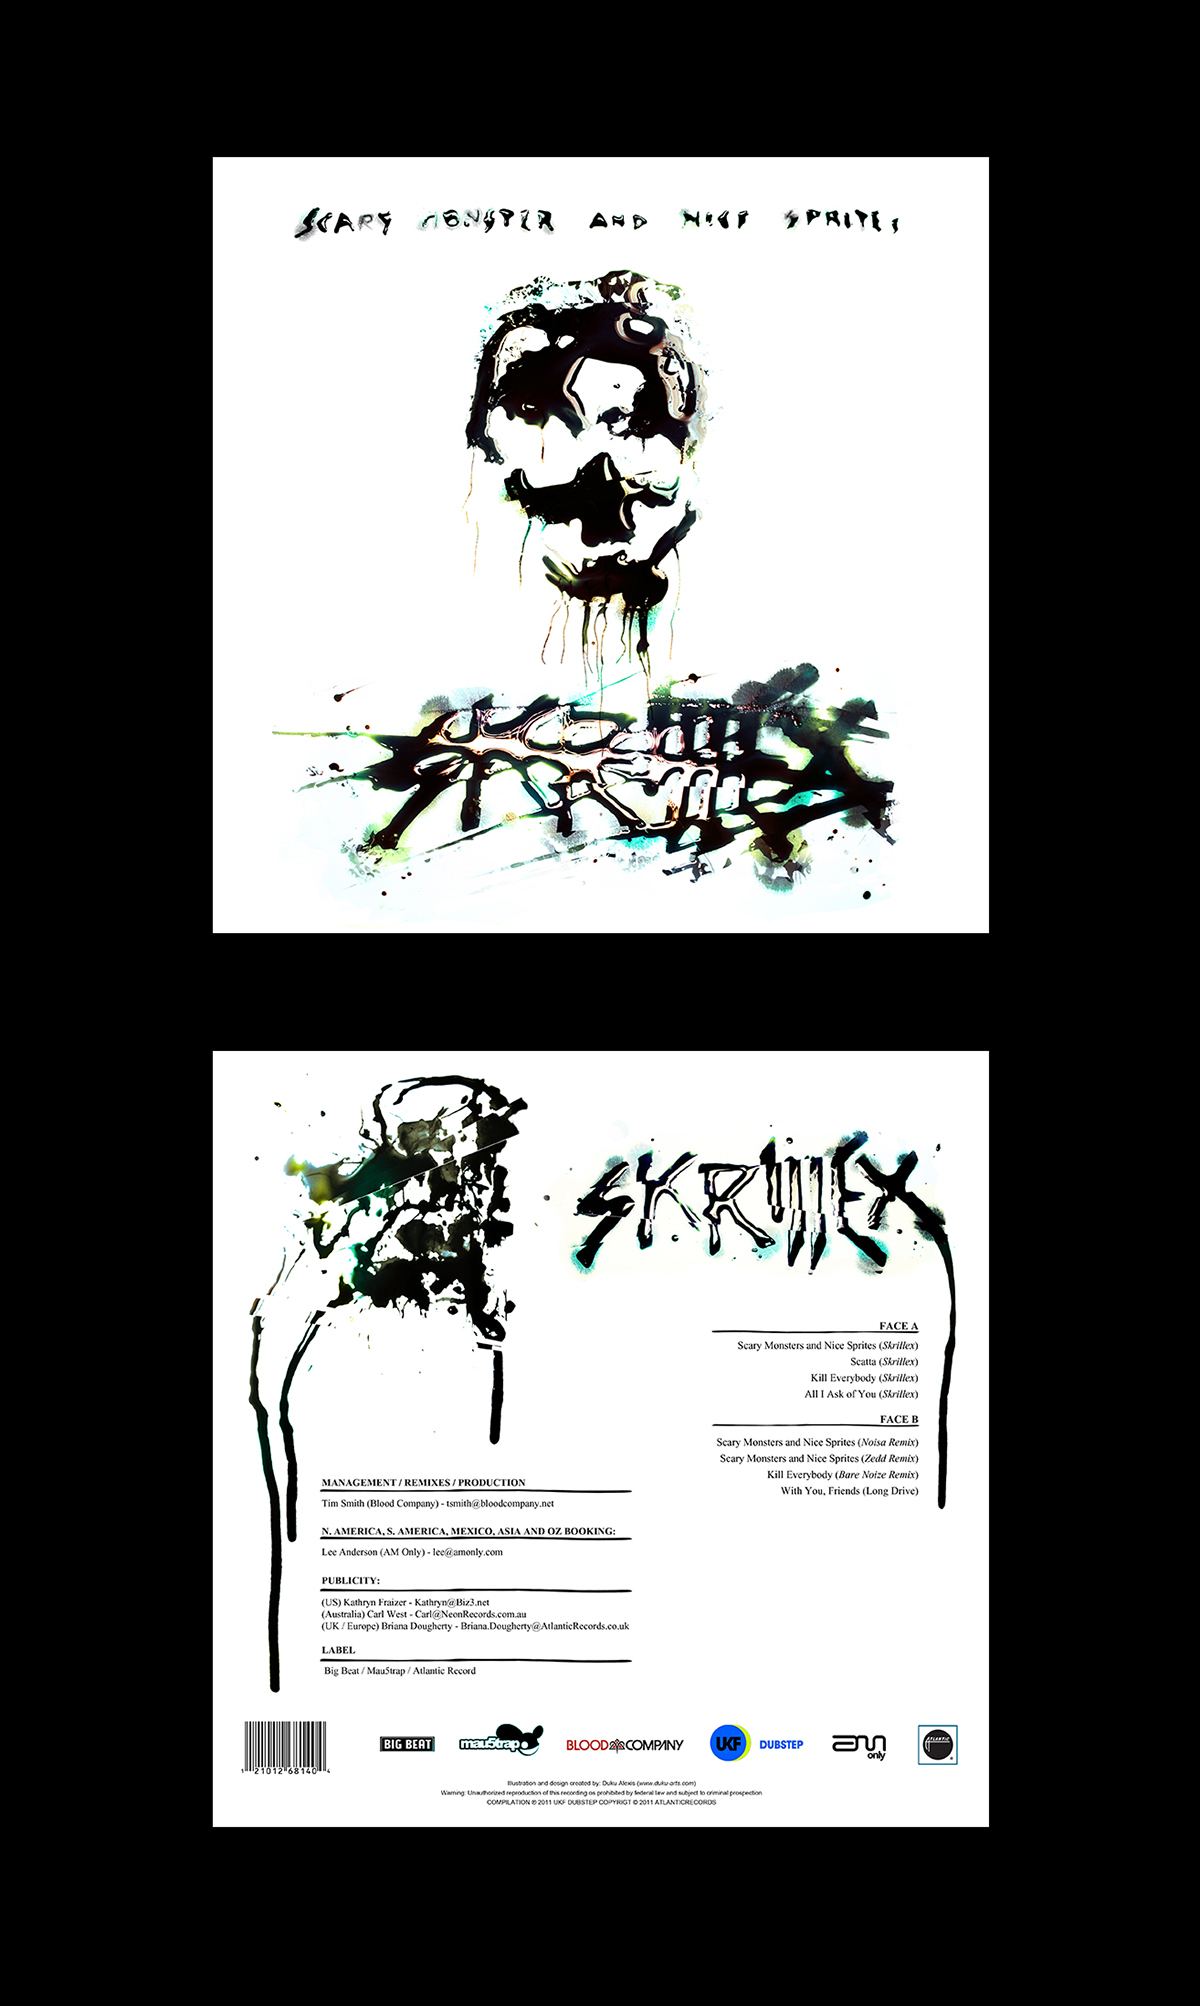 skrillex vinyl black death fractal collector